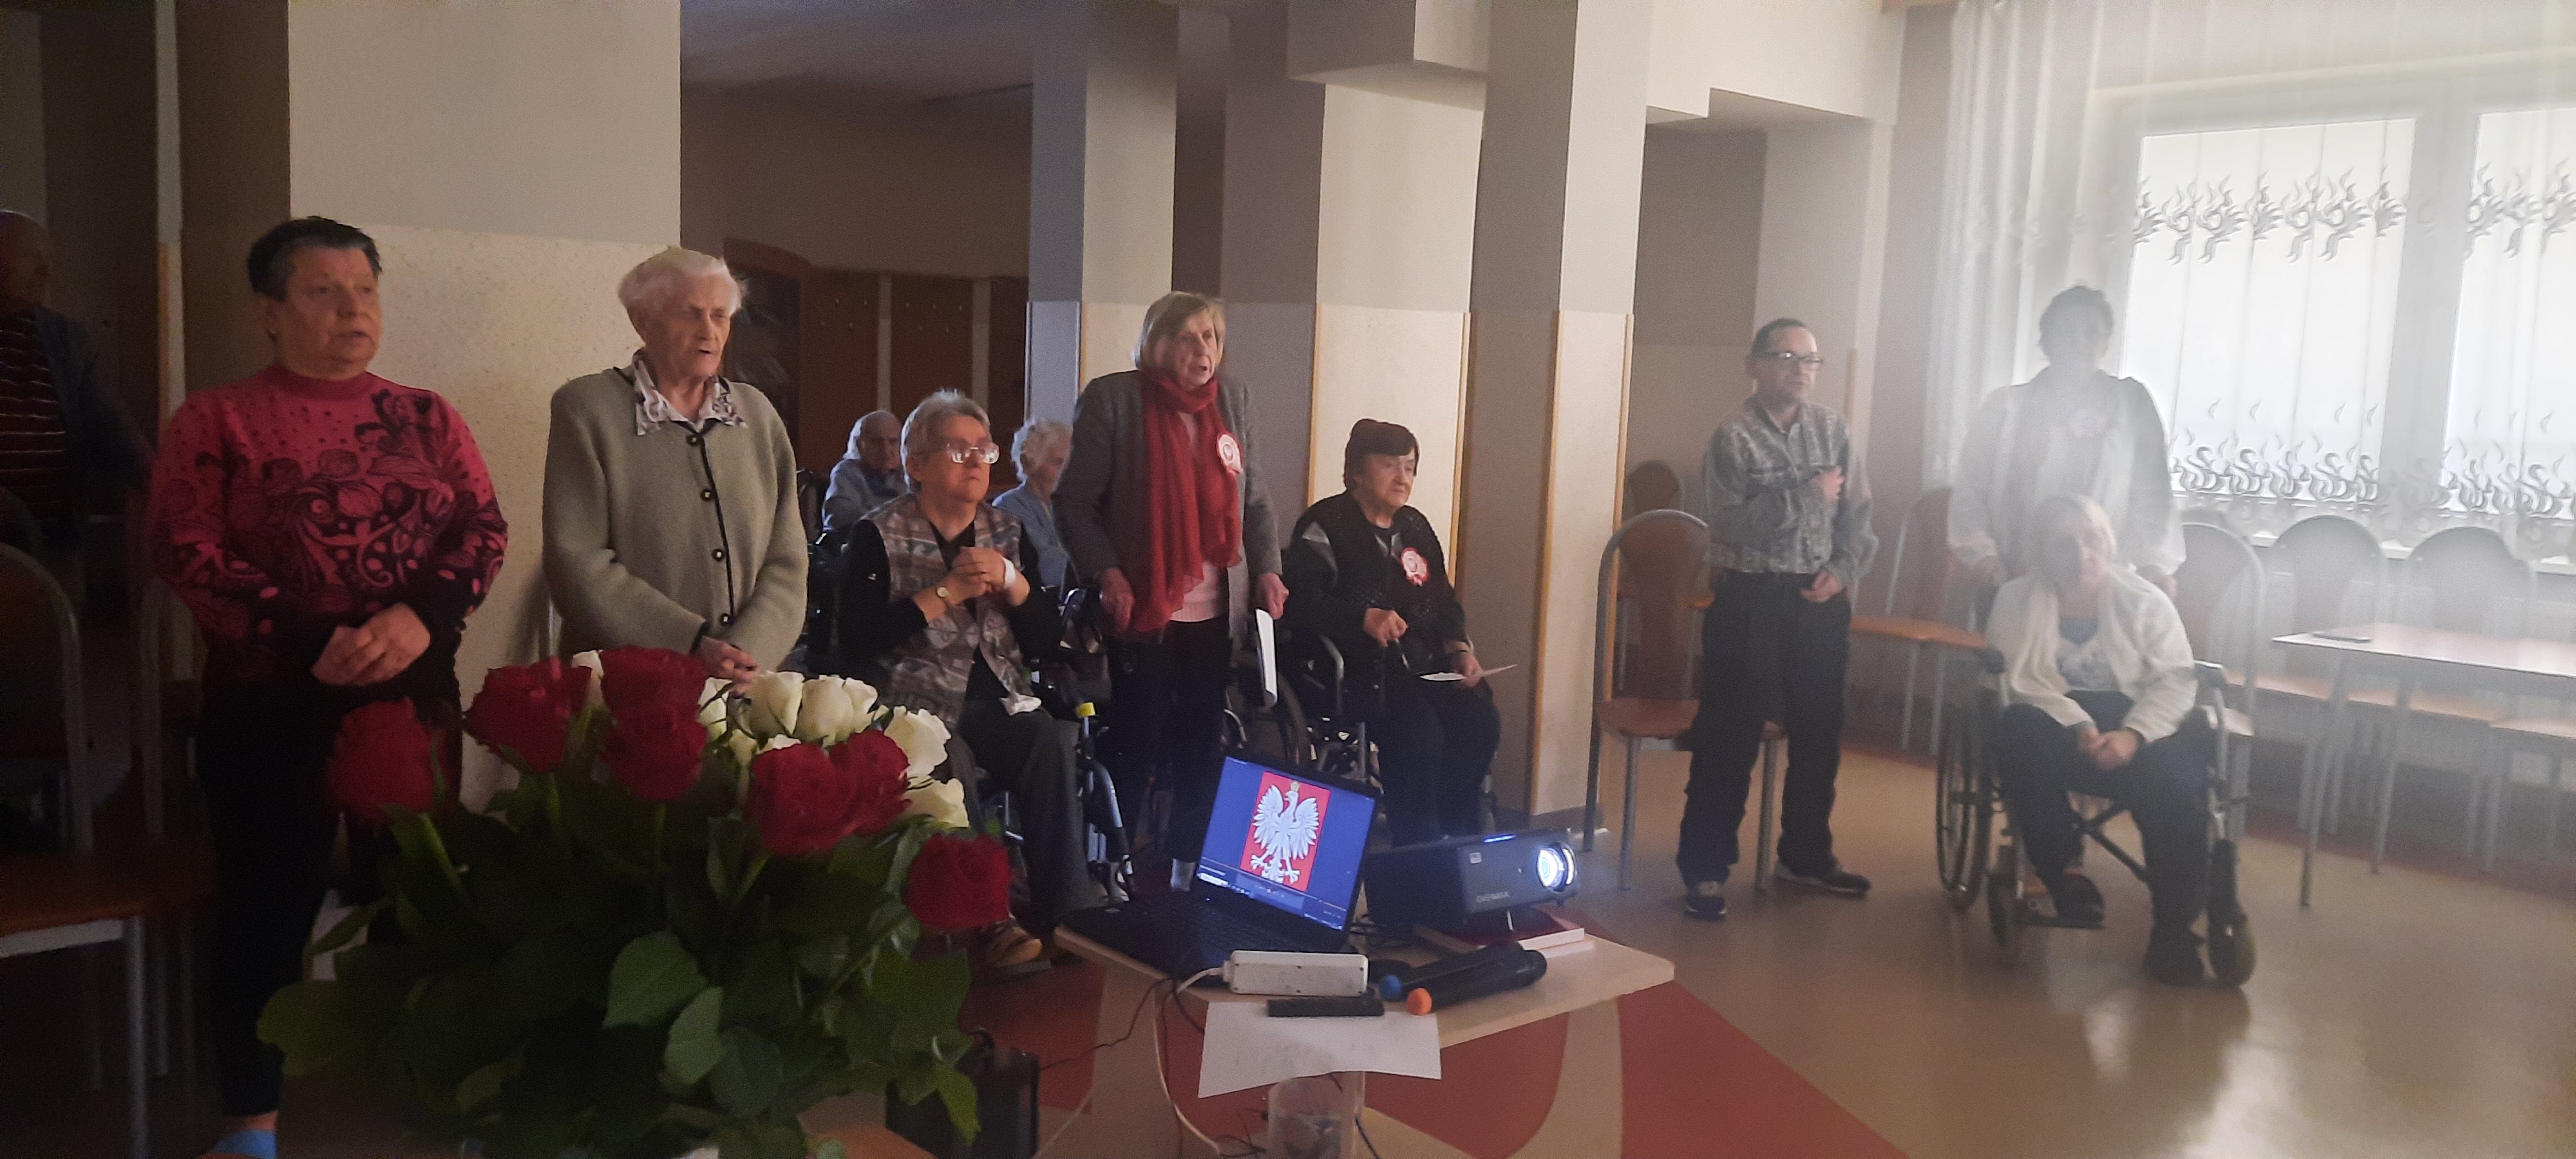 Grupa Seniorów odśpiewuje hymn Polski